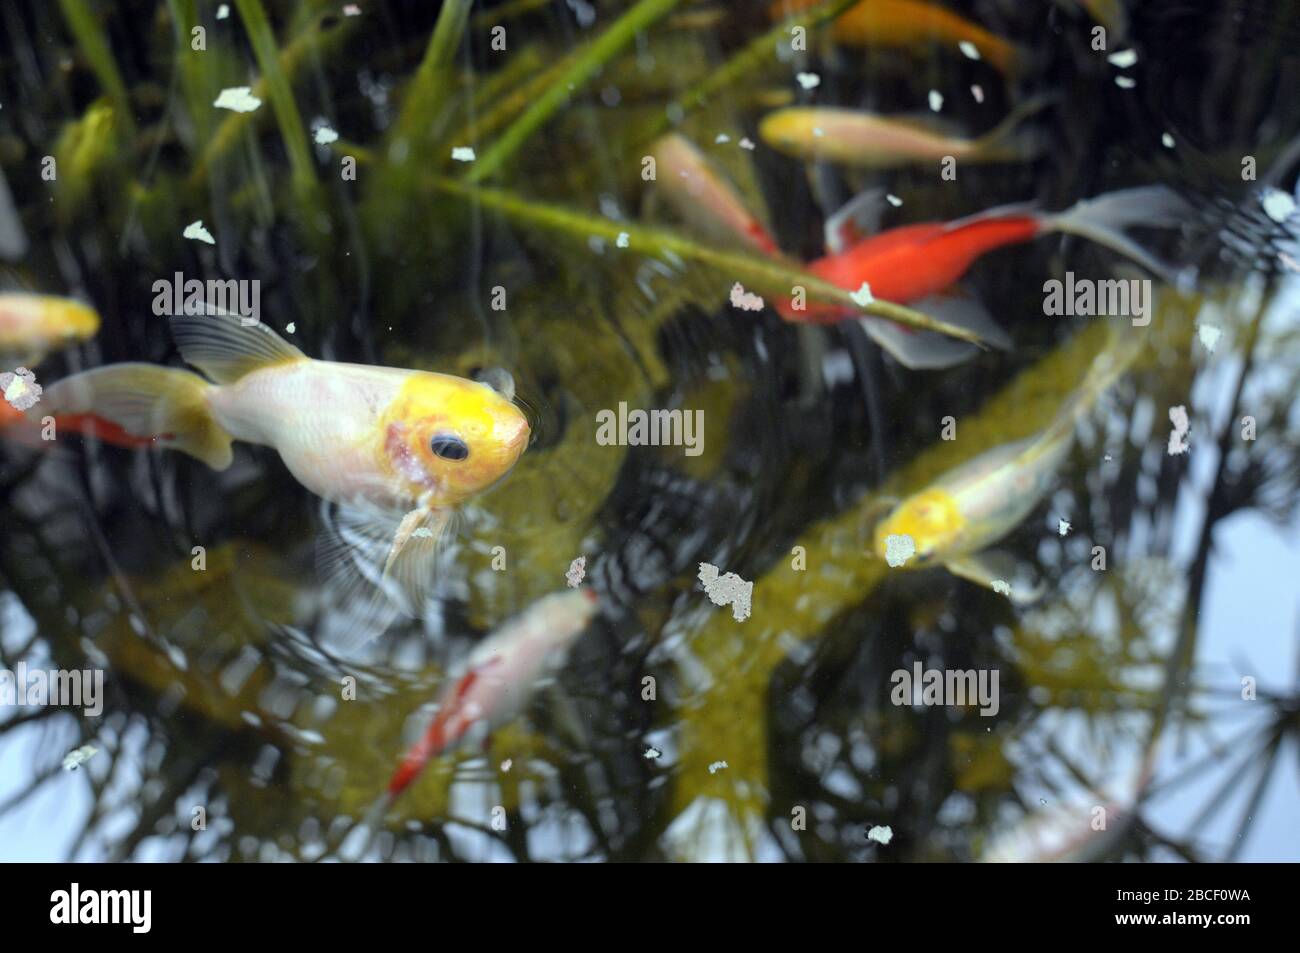 Colorful fish, Aquarium goldfish Stock Photo